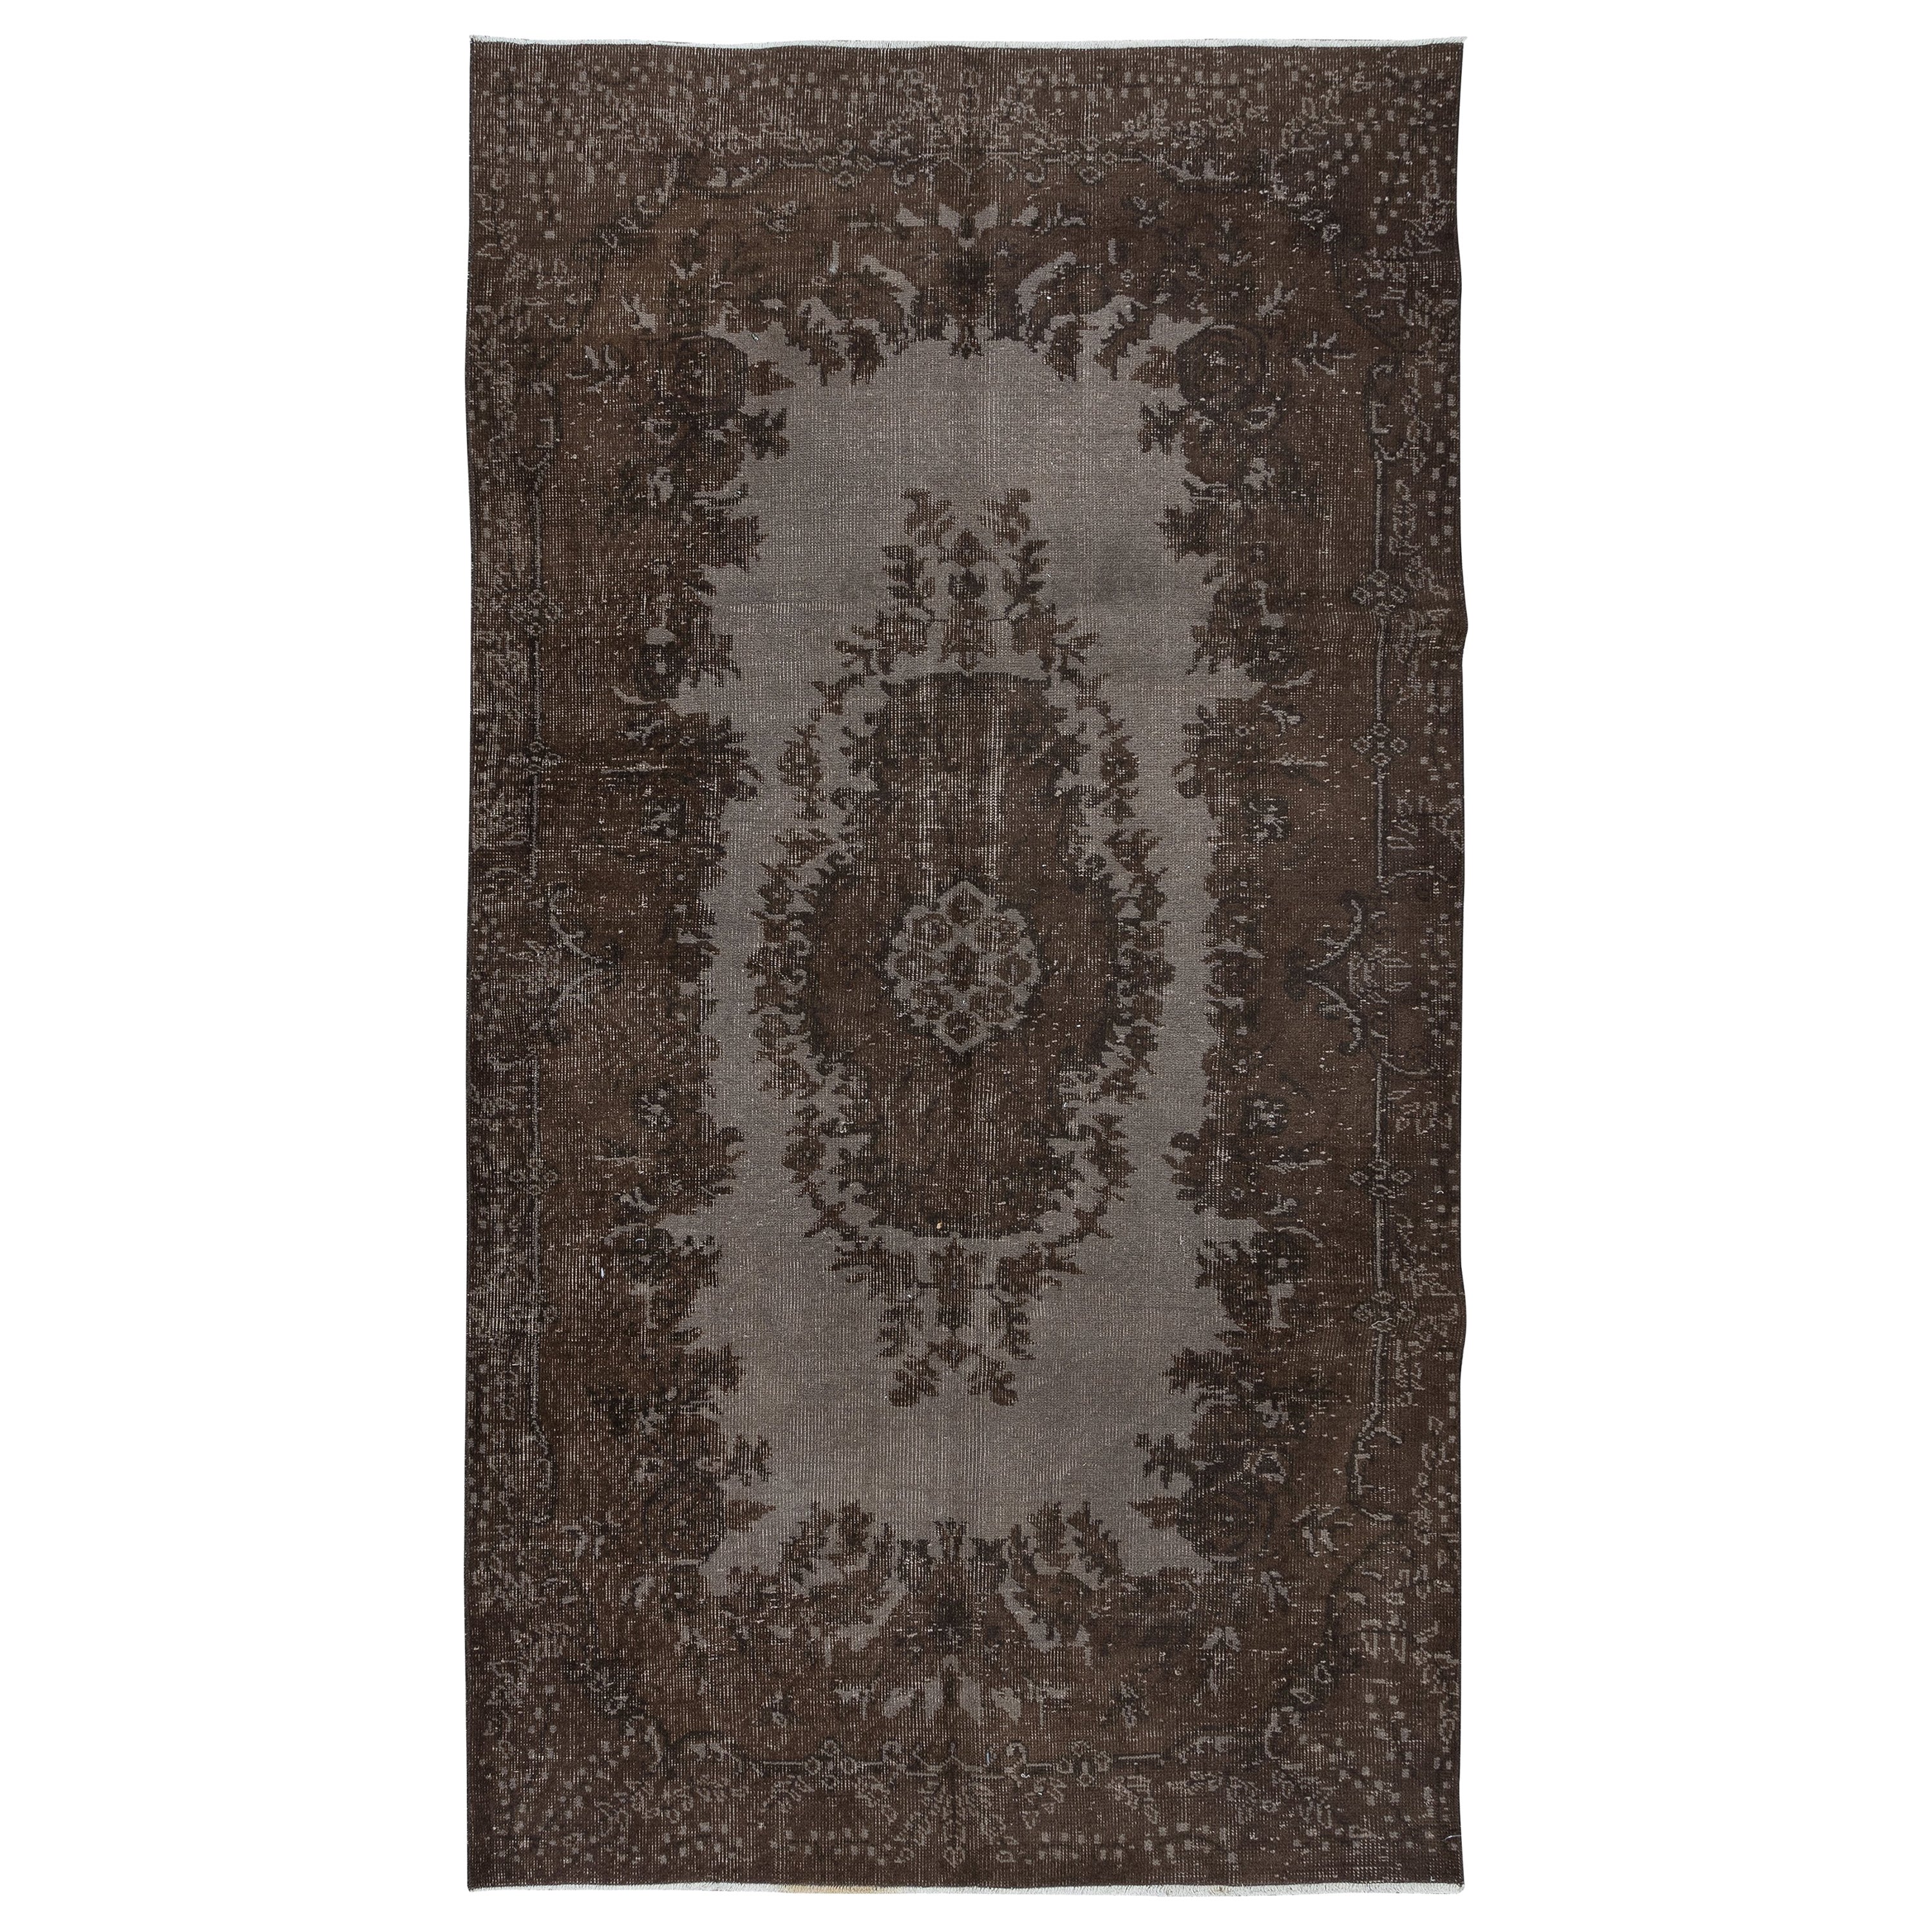 5x8.7 Ft Handmade Turkish Rug in Brown, Modern Home Decor Carpet with Medallion (Tapis turc fait à la main en brun, décoration intérieure moderne avec médaillon)